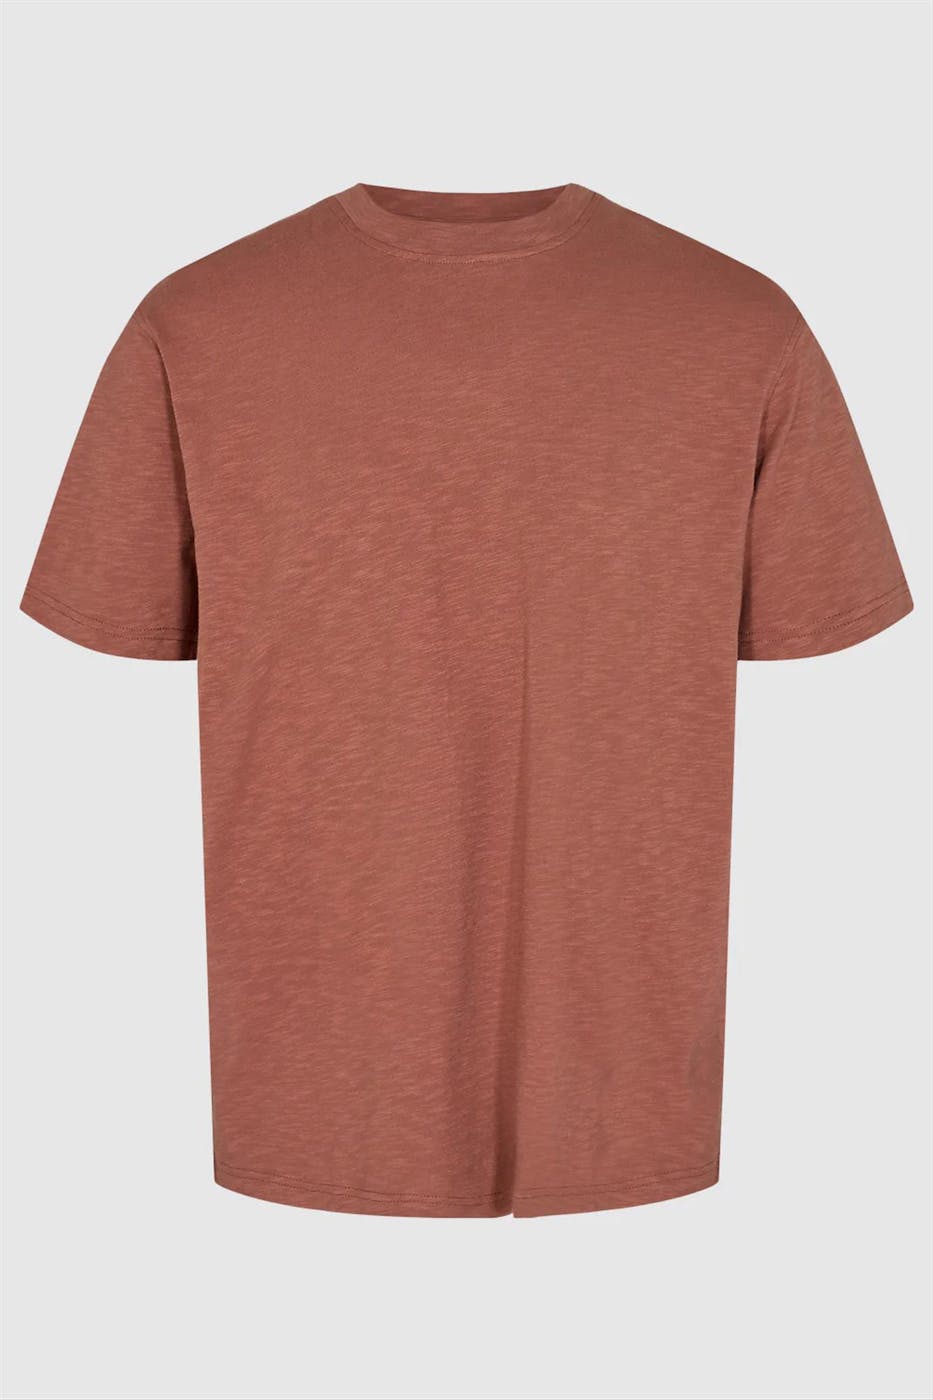 Minimum - Baksteenrode Heon t-shirt